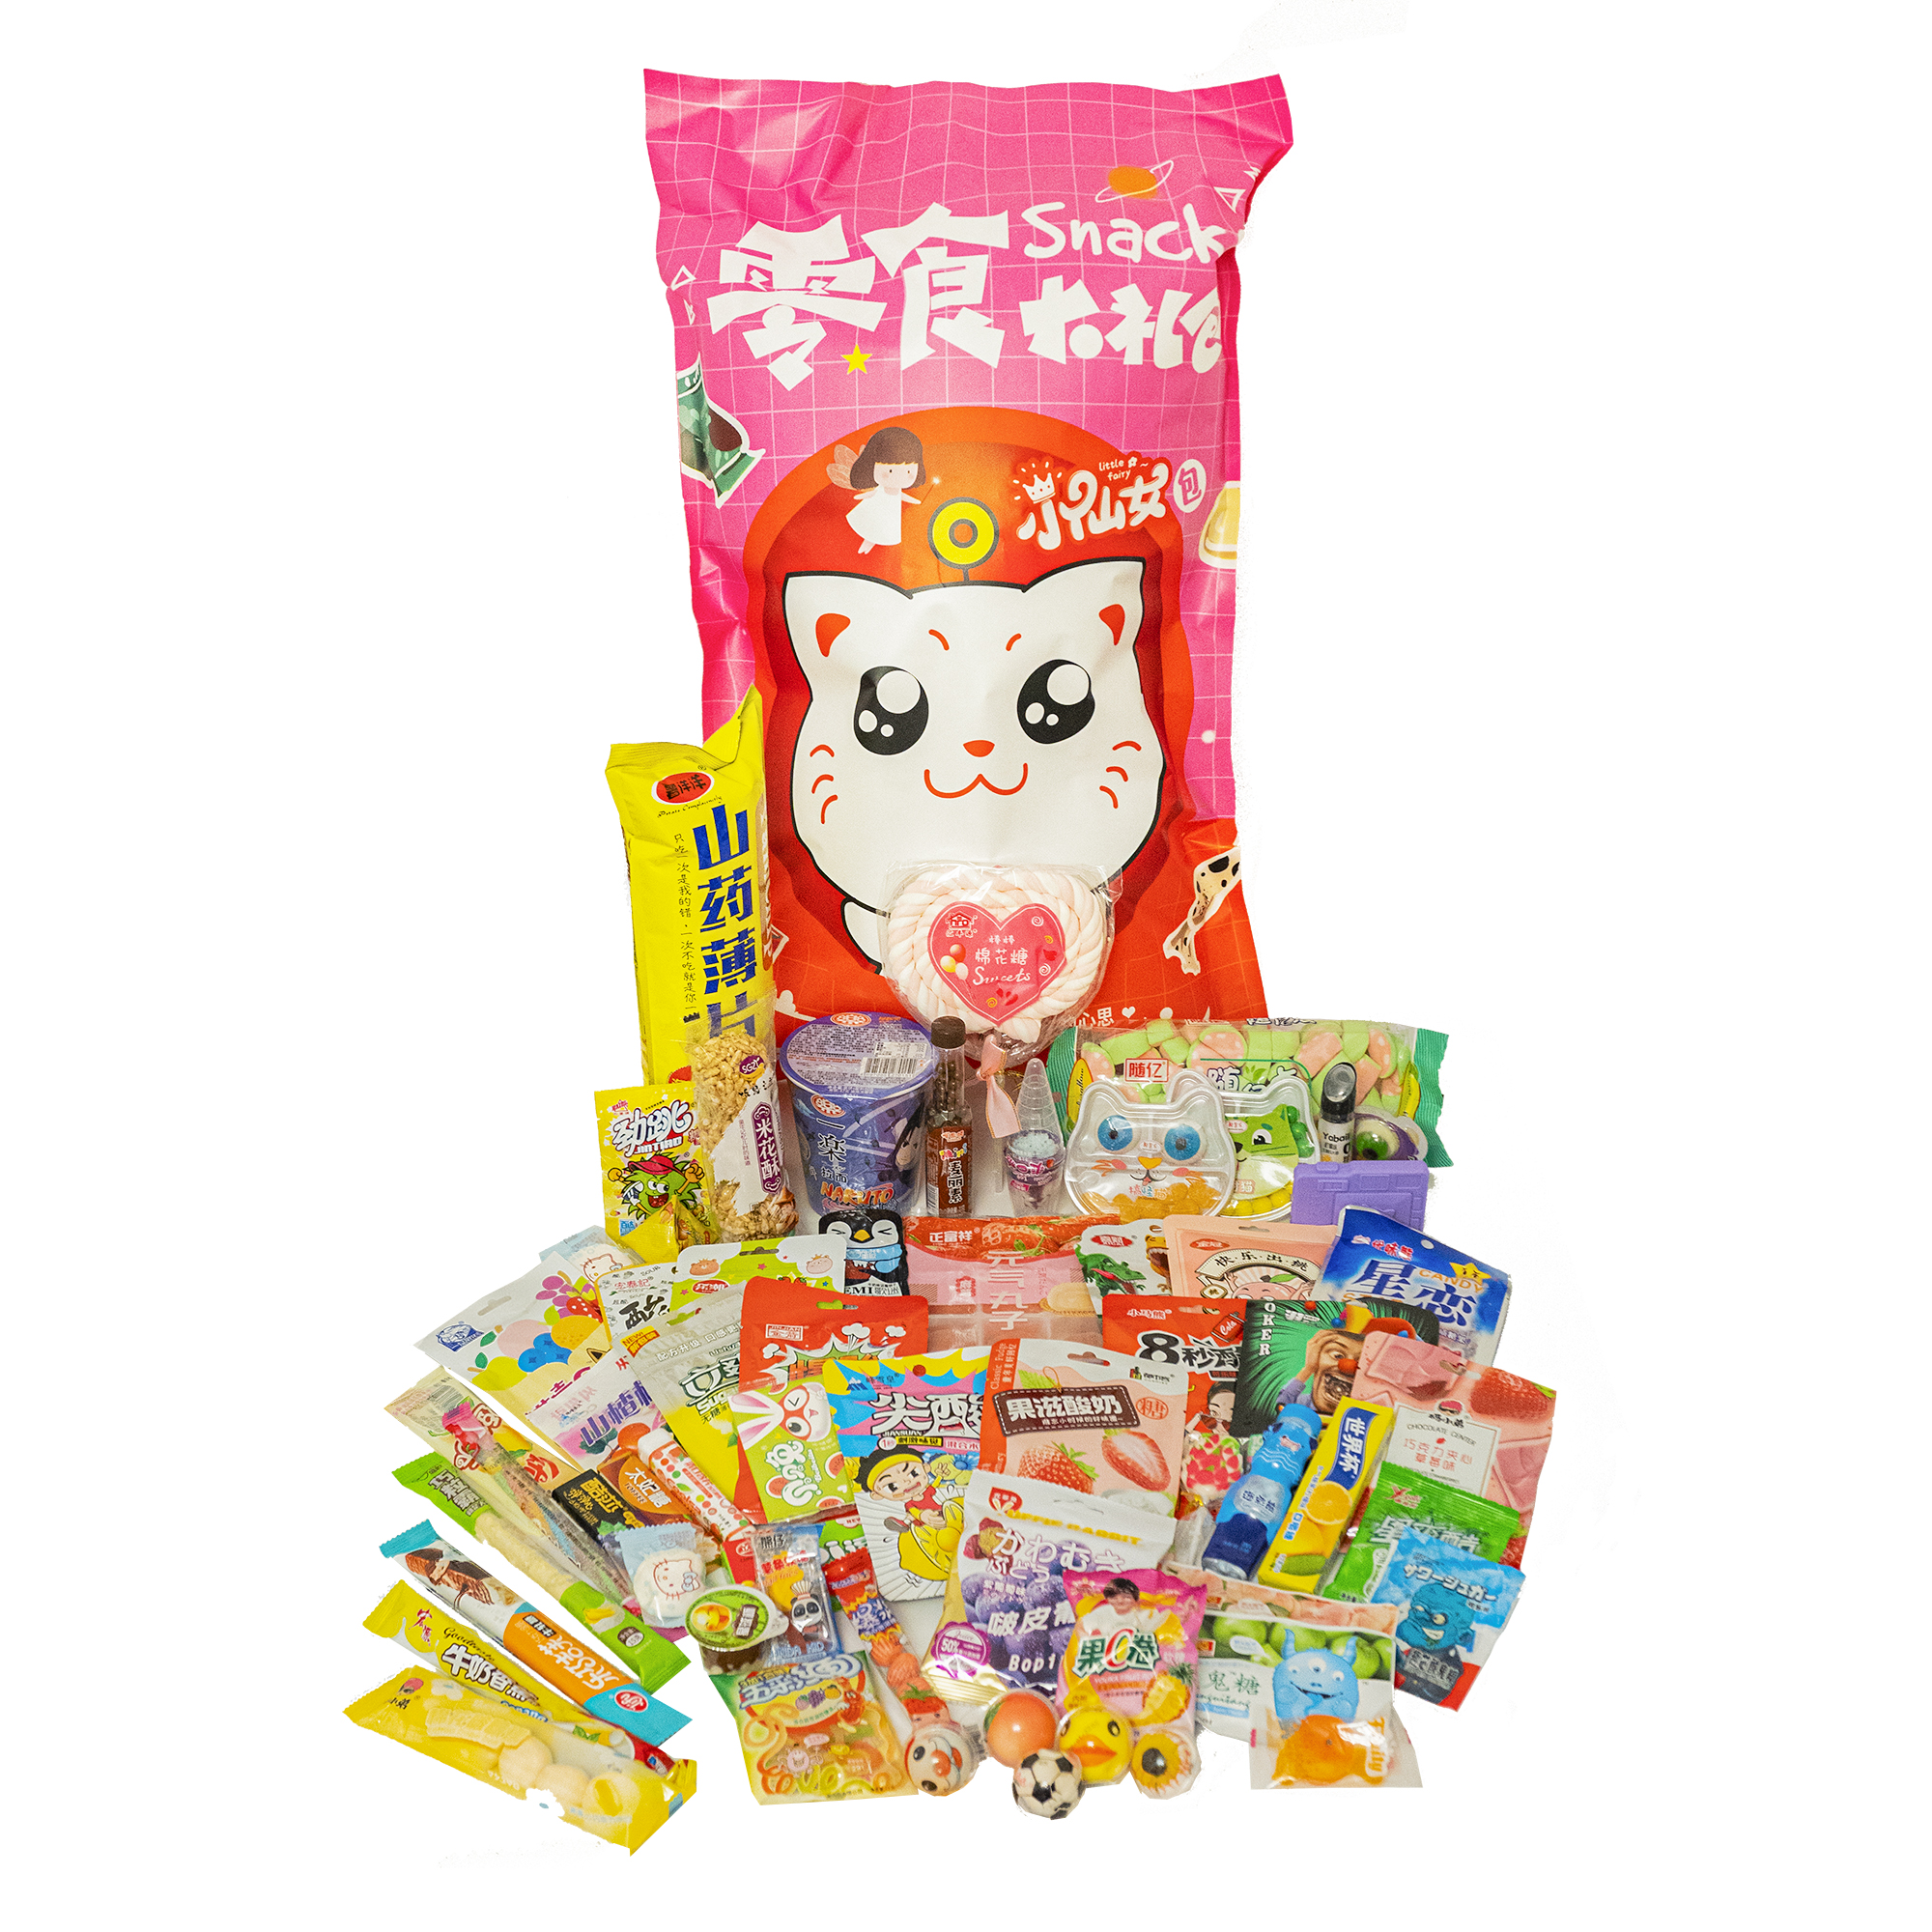 Мешки со сладостями. Пакет сладостей Yokee Pinky кот. Вкусняшки для детей в индивидуальной упаковке. Мармеладная лапша. Вкусняшки в пакете.